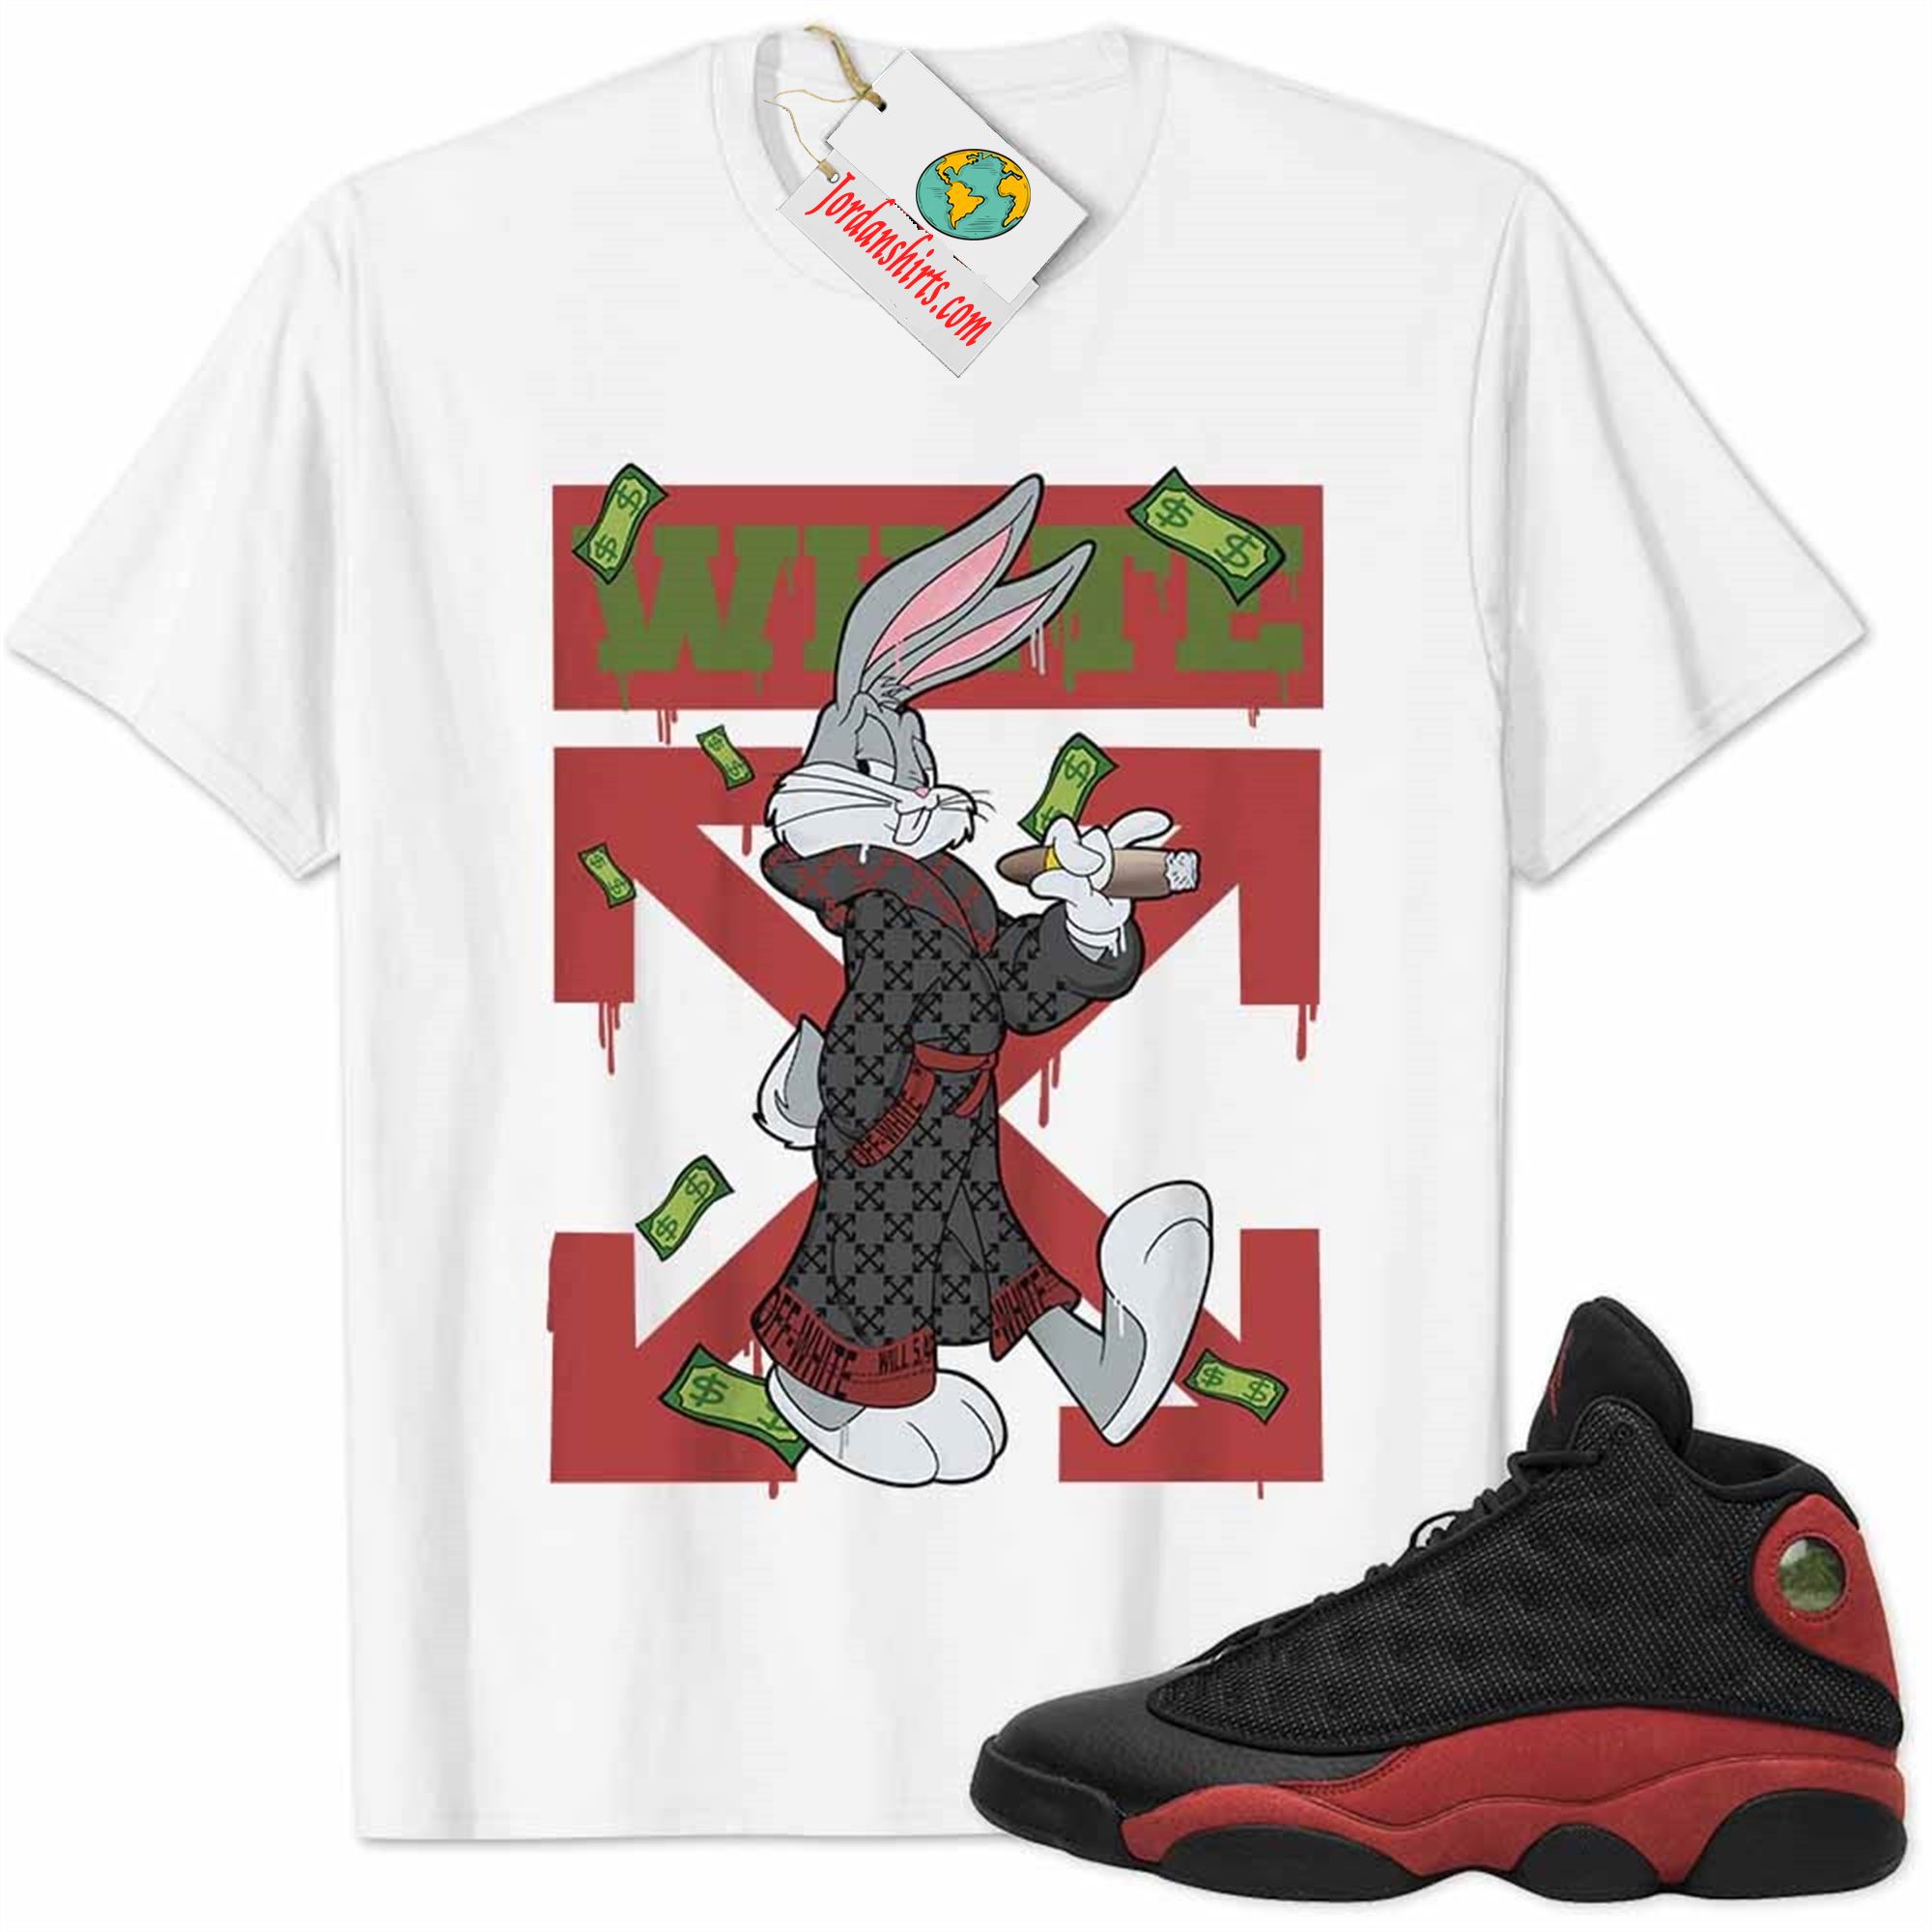 Jordan 13 Shirt, Jordan 13 Bred Shirt Bug Bunny Smokes Weed Money Falling White Full Size Up To 5xl